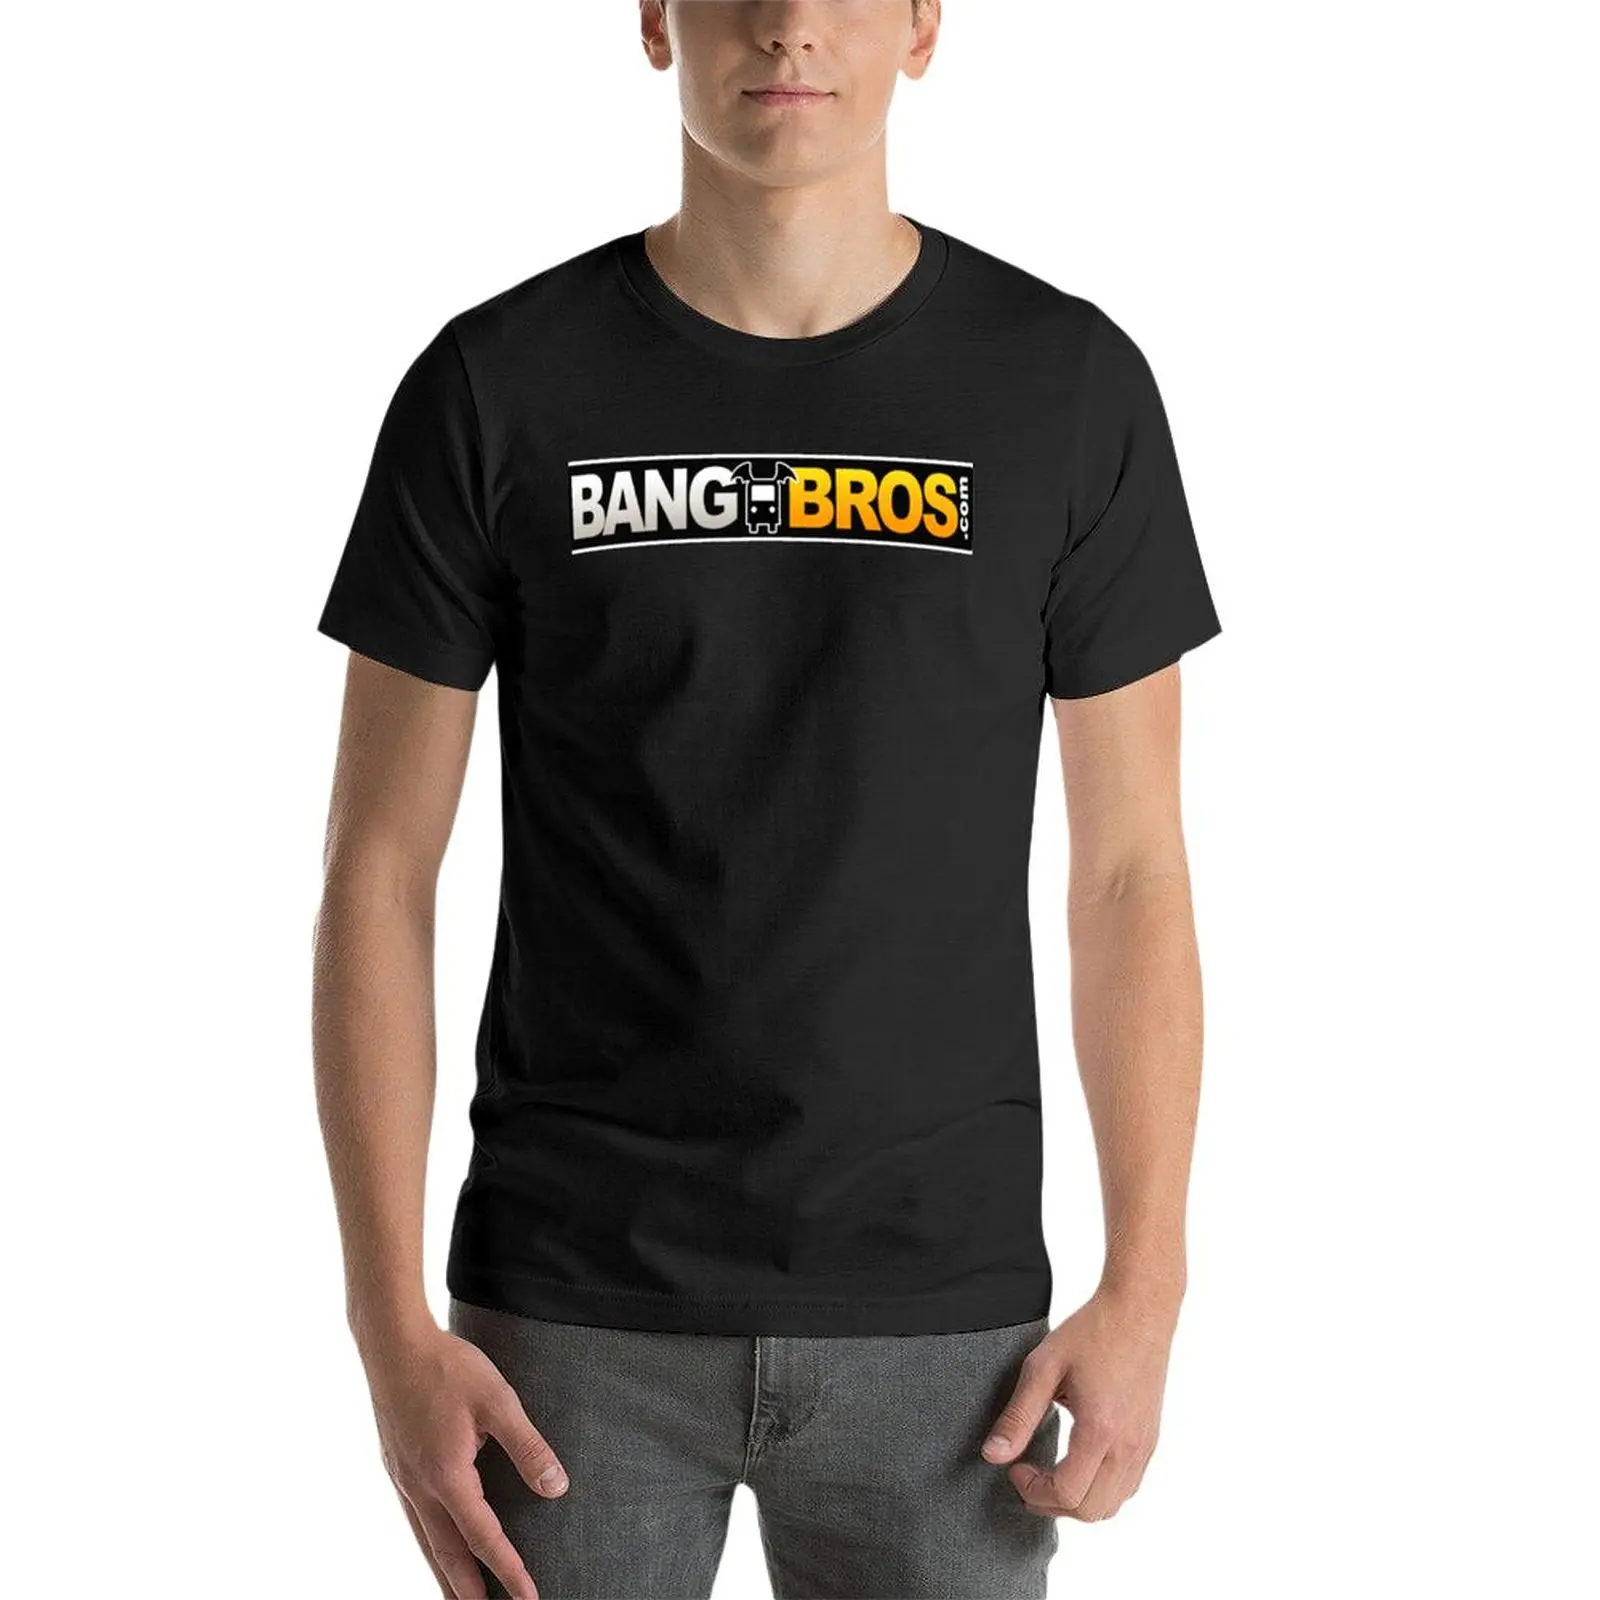 Новая футболка Bangbros, корейские модные летние топы, быстросохнущая рубашка с коротким рукавом, футболки для больших и высоких мужчин